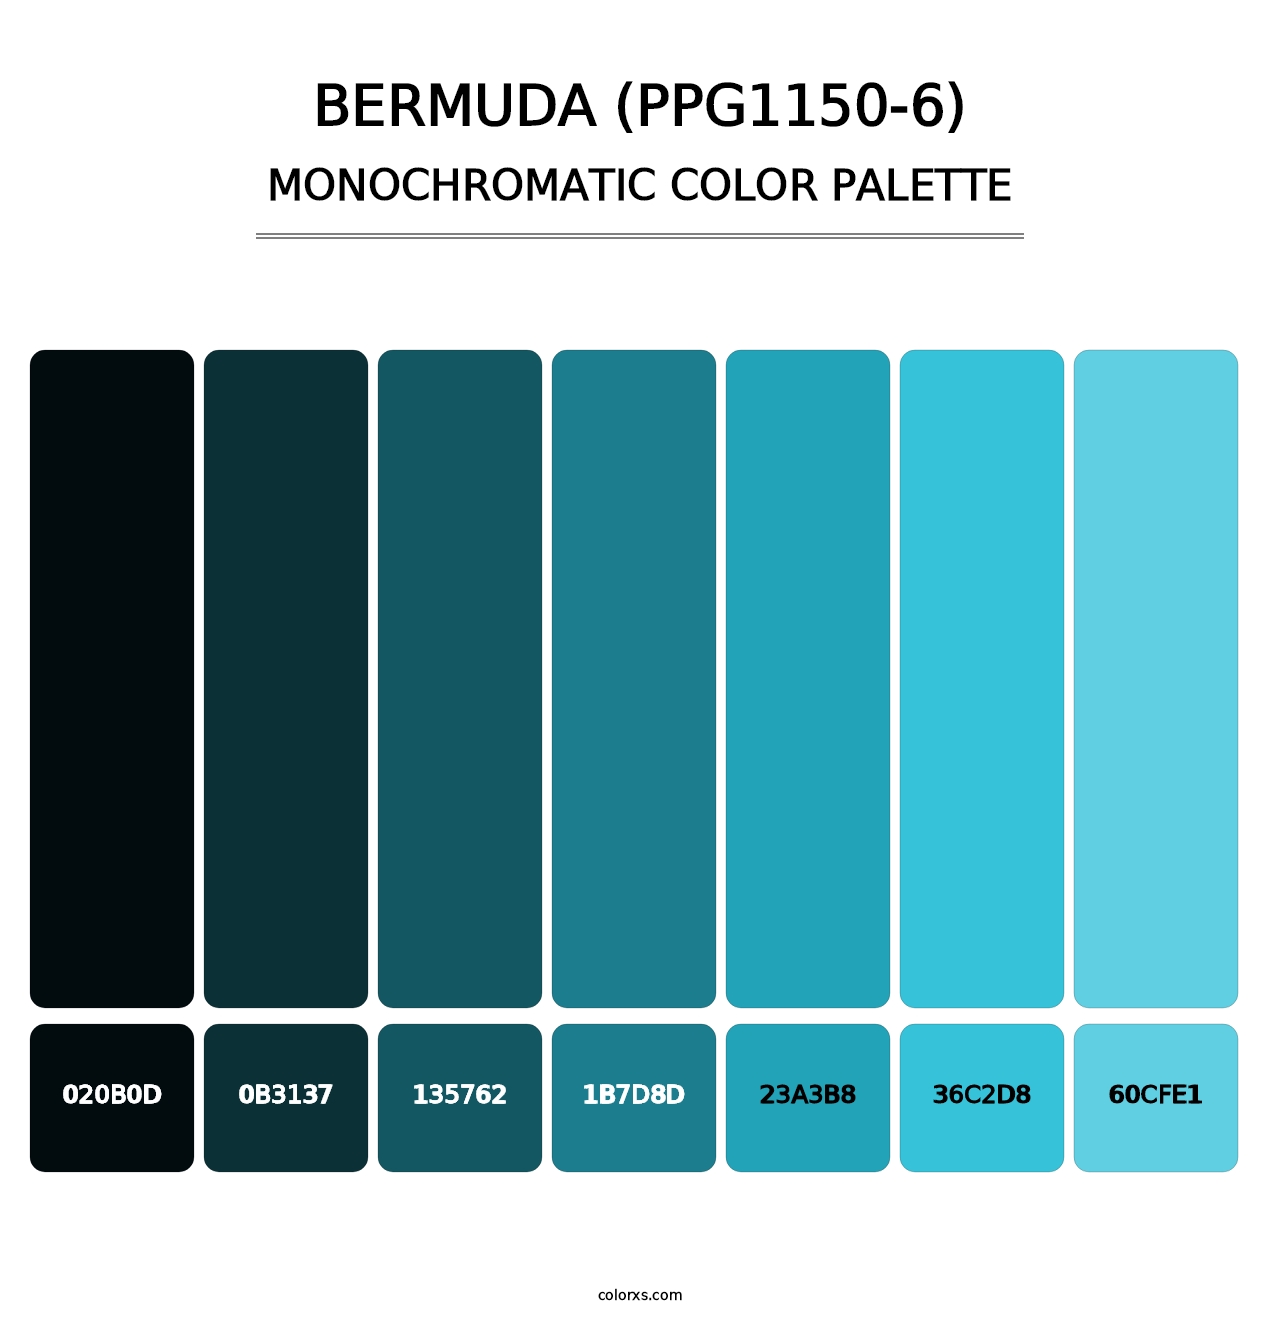 Bermuda (PPG1150-6) - Monochromatic Color Palette